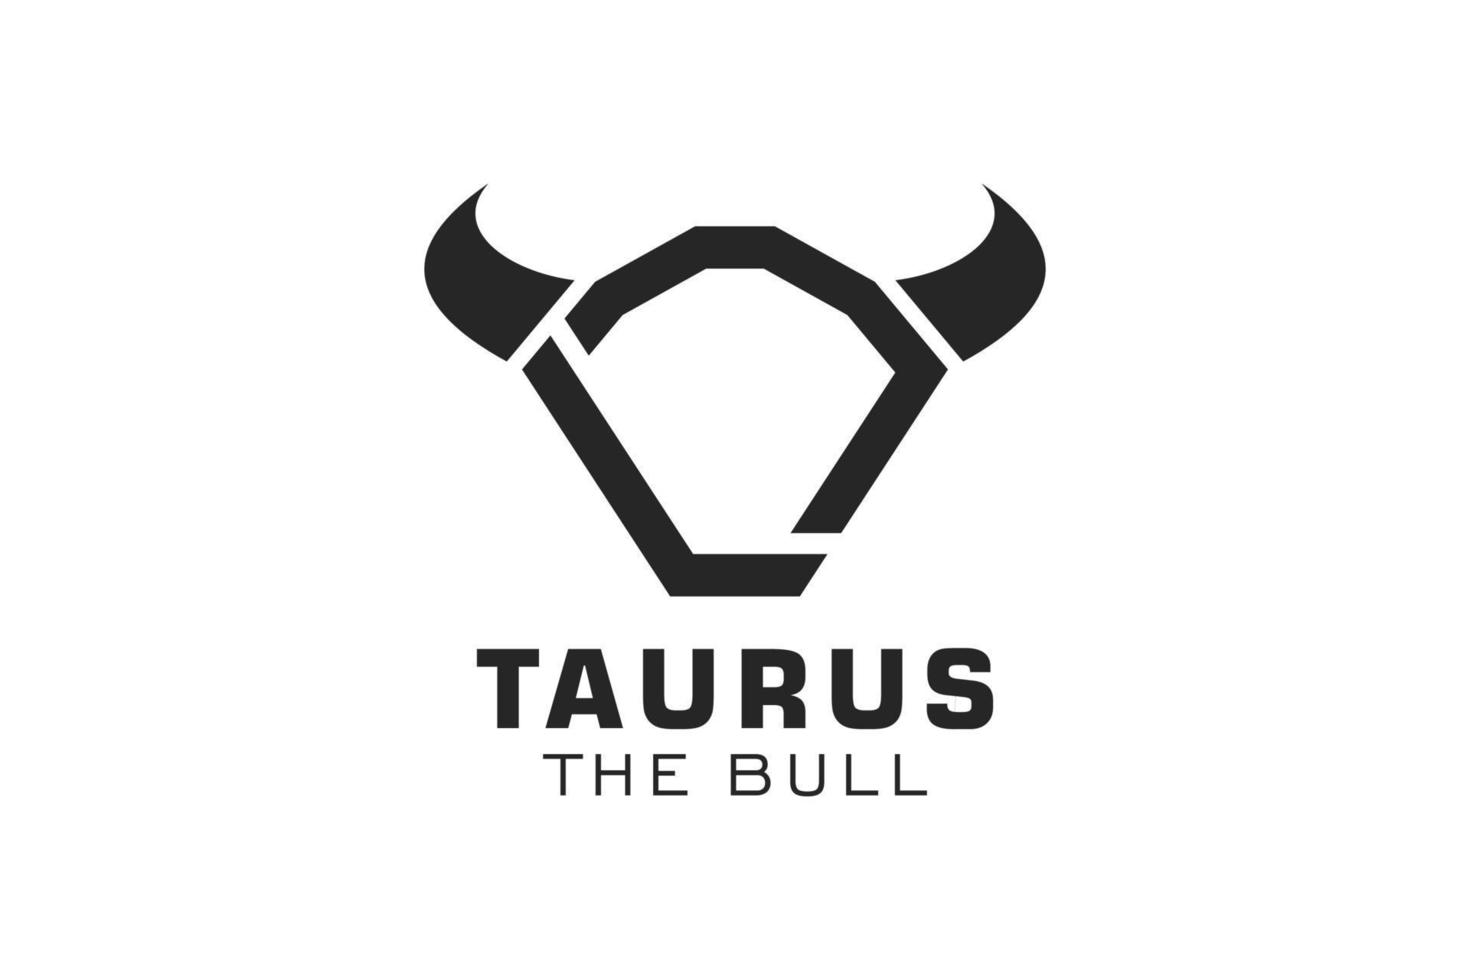 logotipo da letra l, logotipo do touro, logotipo da cabeça do touro, elemento de modelo de design do logotipo do monograma vetor